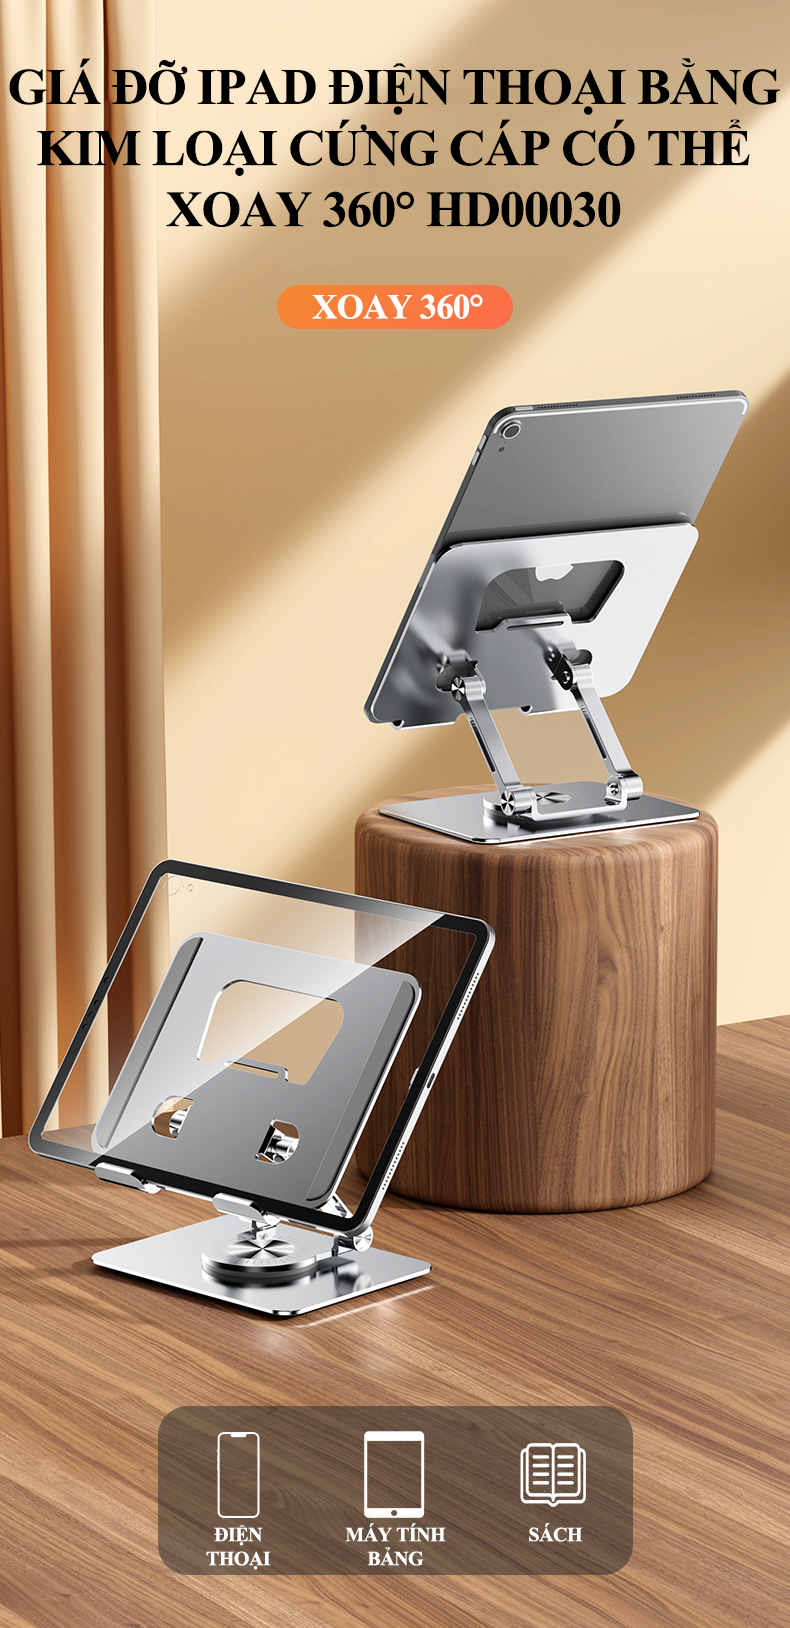 Giá đỡ điện thoại, ipad bằng kim loại cứng cáp có thể xoay 360° phù hợp cho các thiết bị từ 4 đến 12 inch HD00030